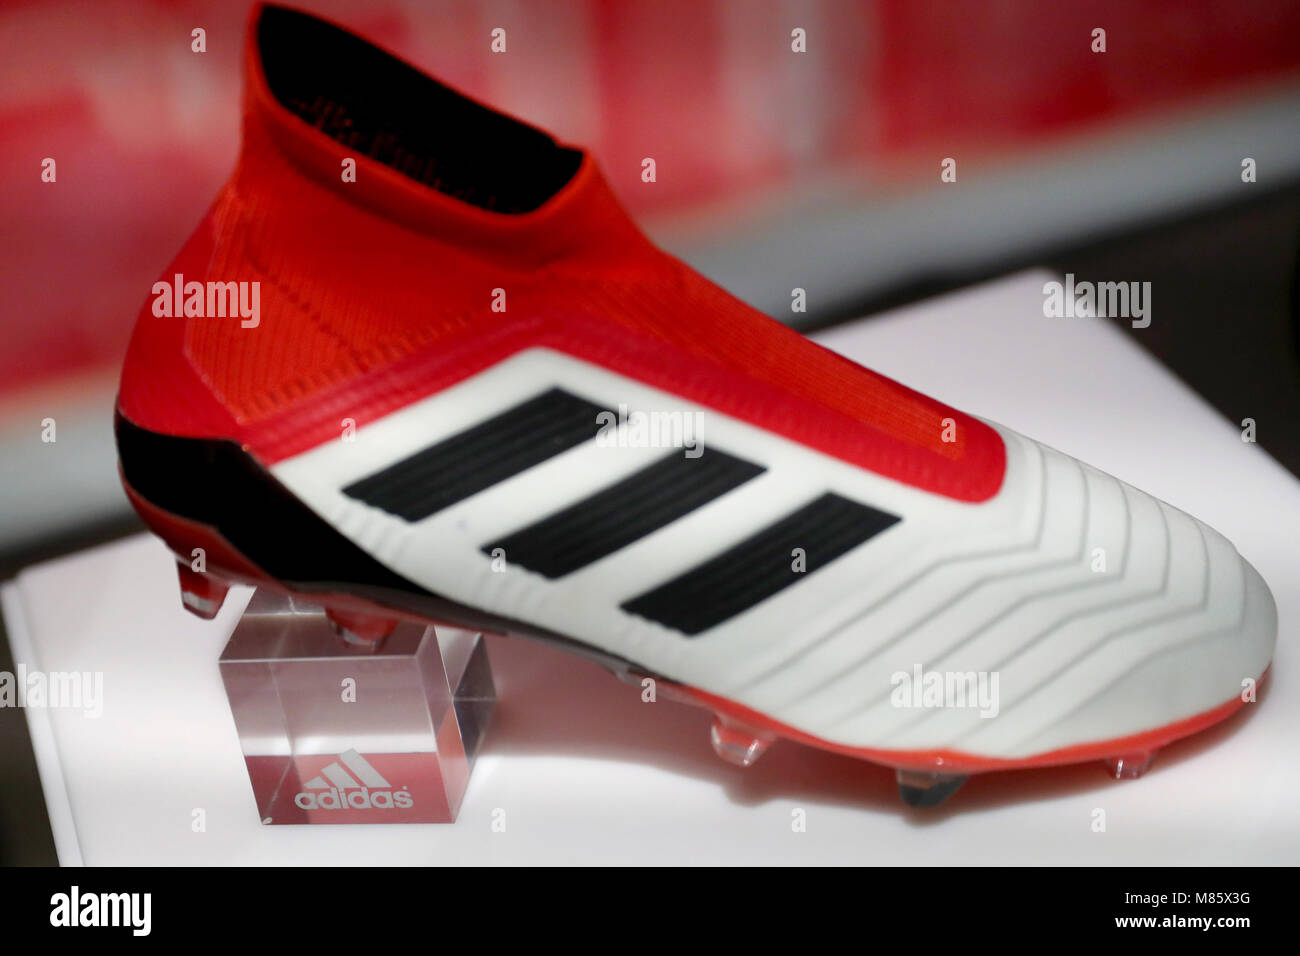 14 März 2018, Deutschland, Herzogenaurach: adidas Logo auf einem Fußball  Schuh auf der Bilanzpressekonferenz von adidas AG. Foto: Daniel Karmann/dpa  Stockfotografie - Alamy